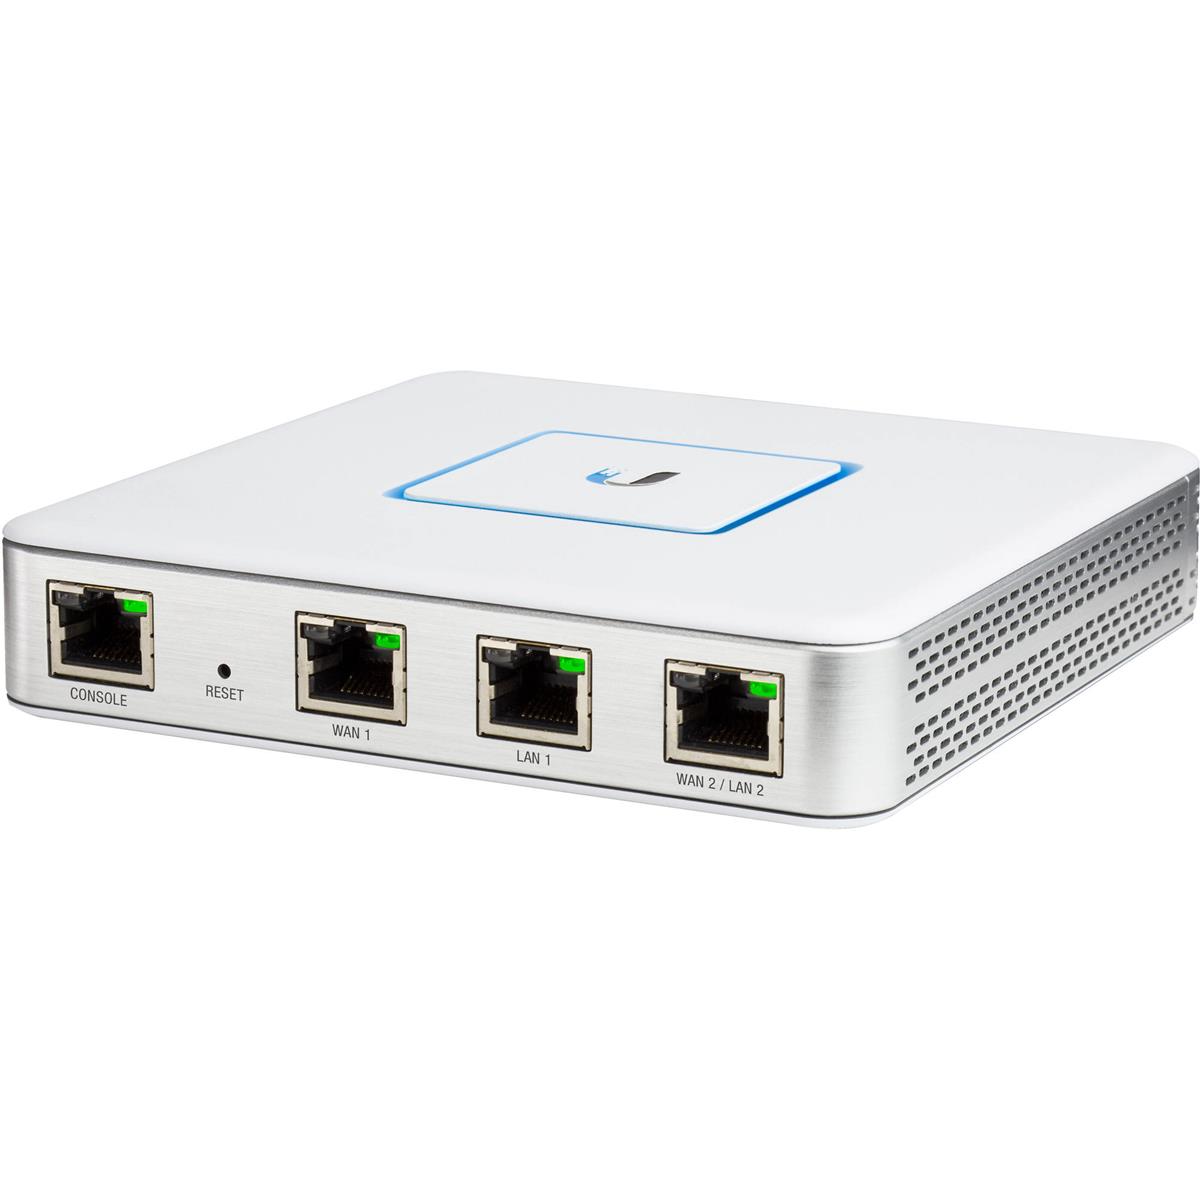 Image of Ubiquiti Networks USG UniFi Enterprise Gateway Router with Gigabit Ethernet